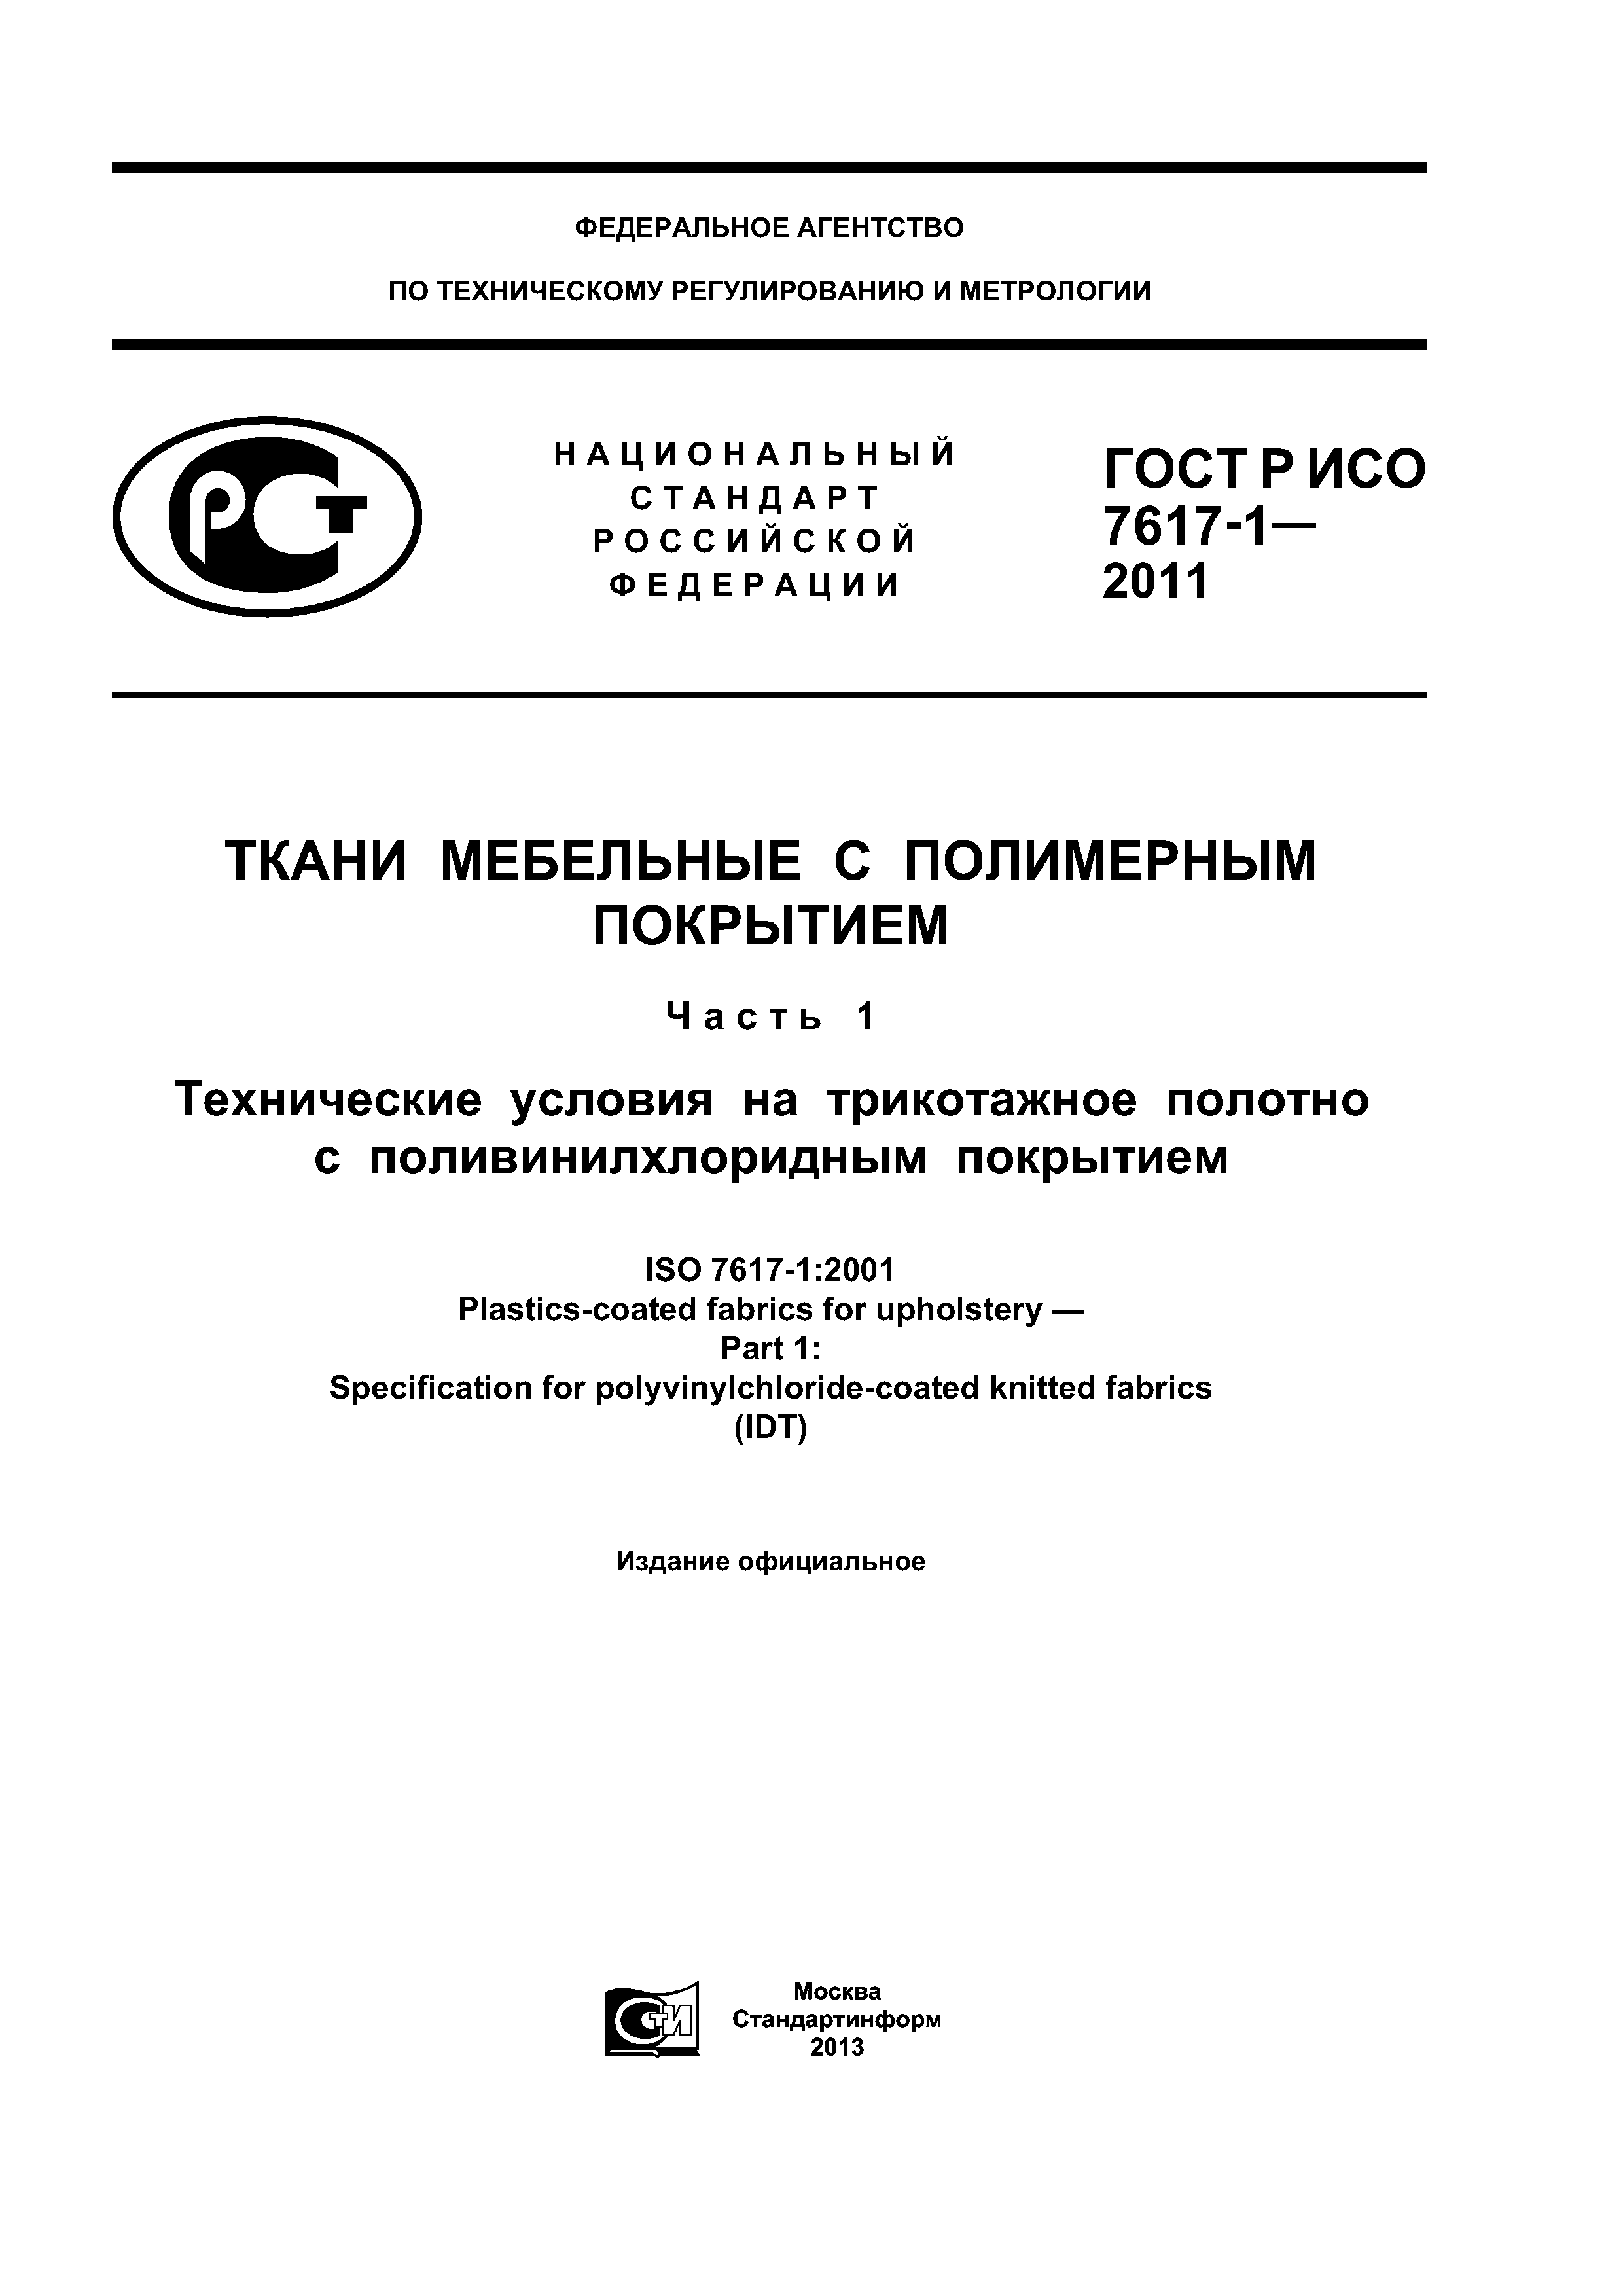 ГОСТ Р ИСО 7617-1-2011